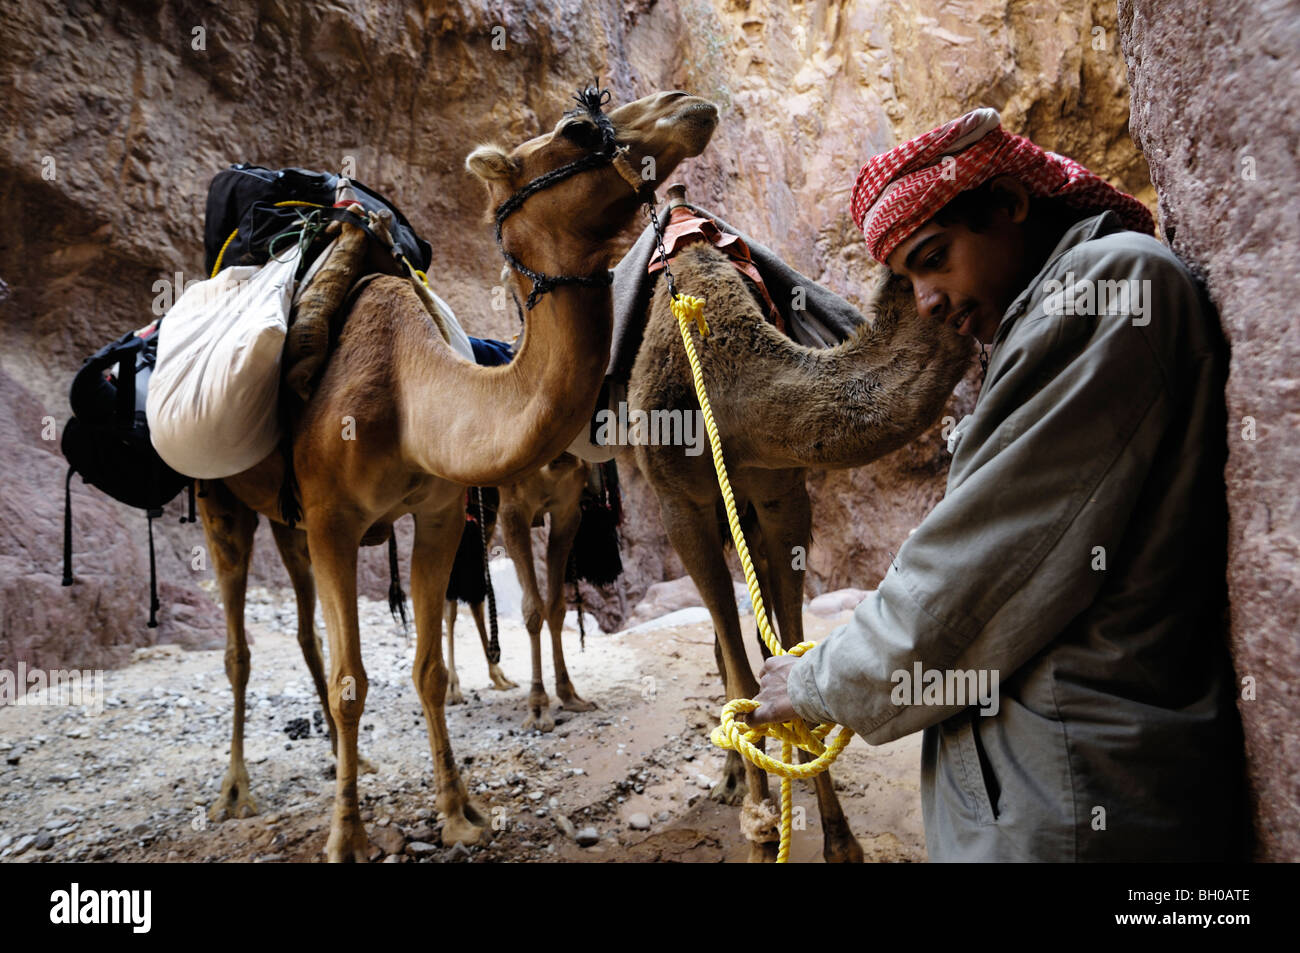 Porträts von Leben der Beduinen in Jordanien Stockfoto